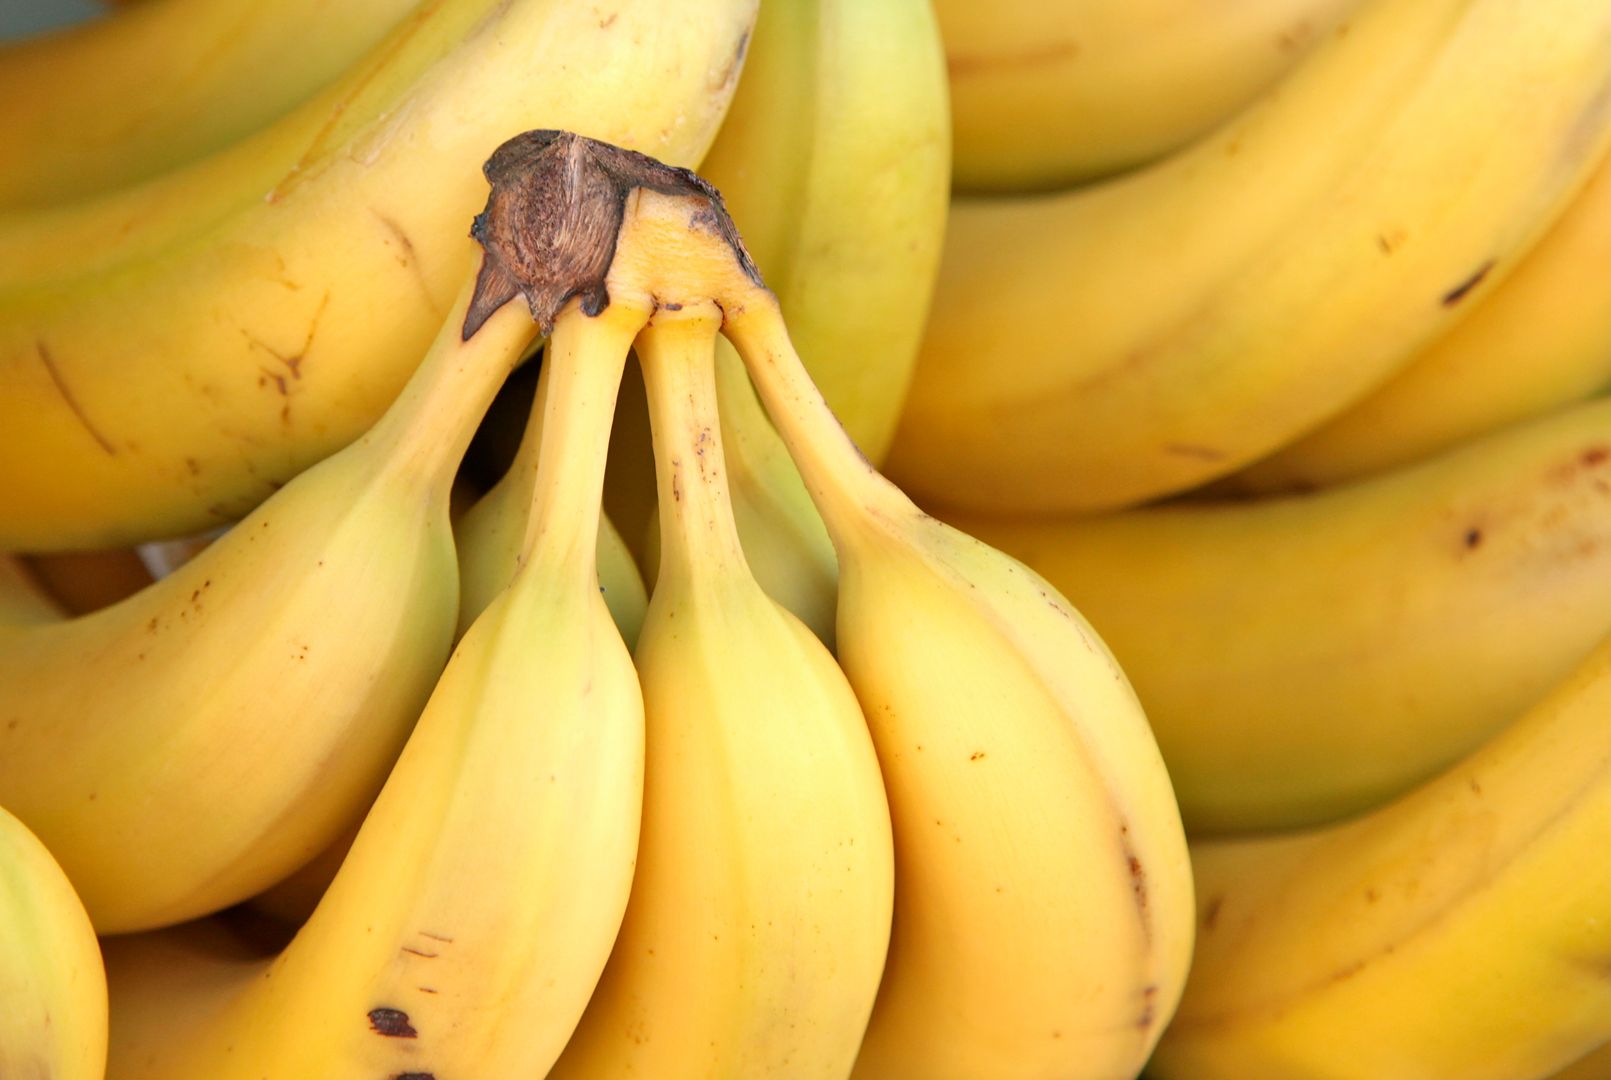 Ktoś napisał "małpa" na bananie. Trwa śledztwo